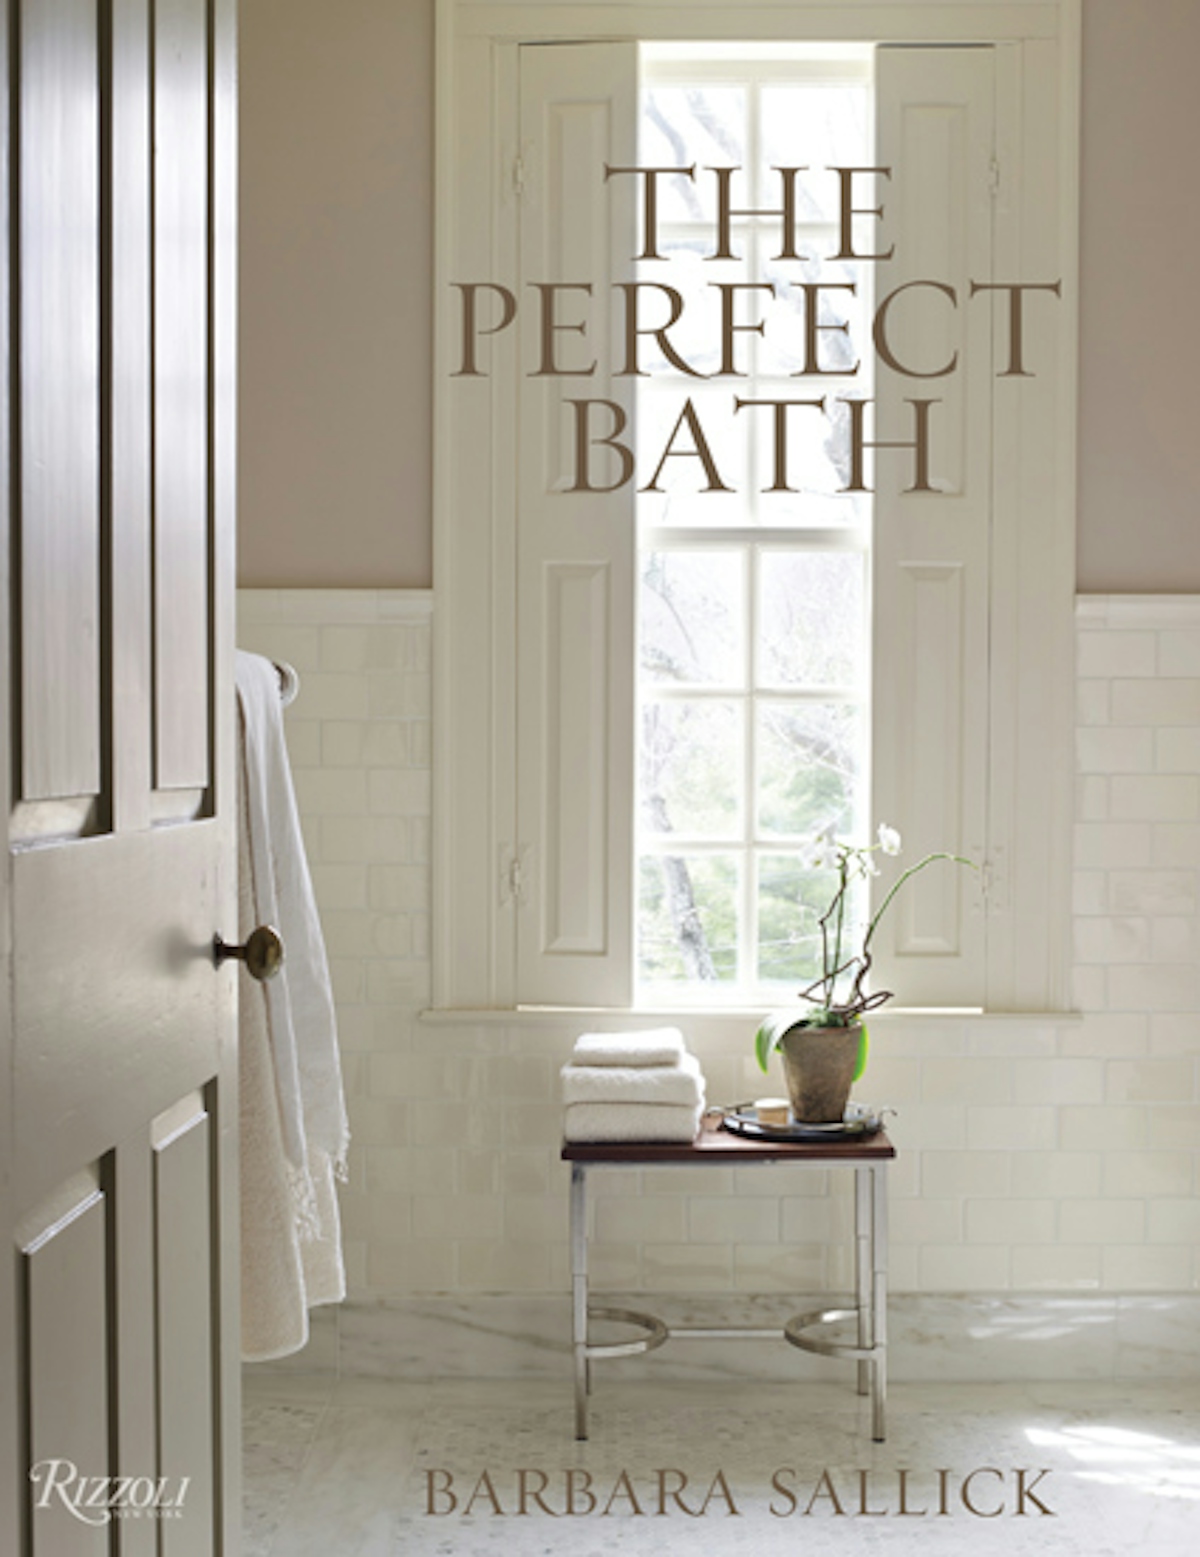 The Perfect Bath – Barbara Sallick – LuxDeco.com Style Guide